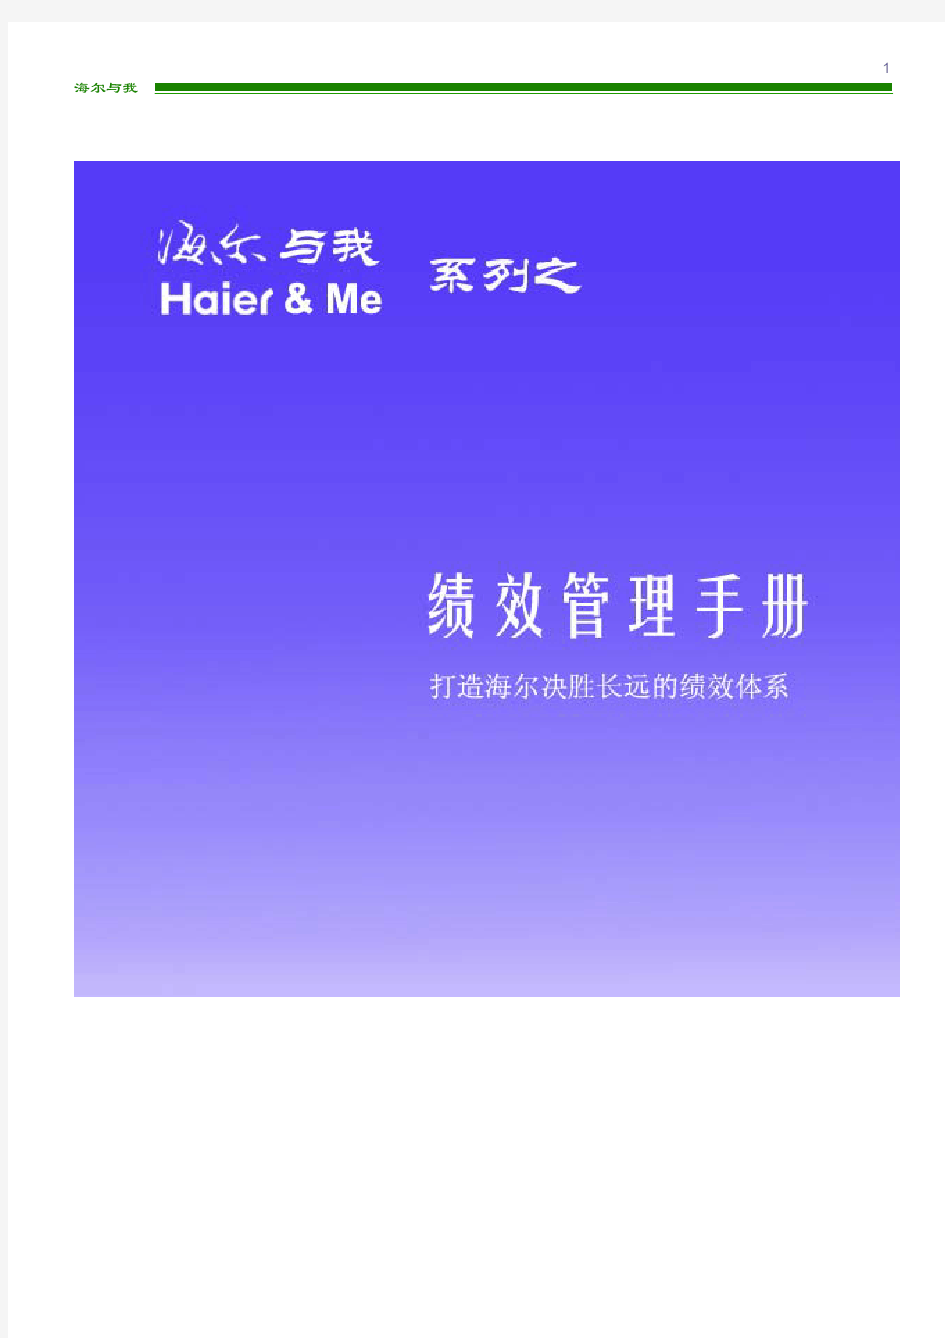 【绩效系列】海尔集团绩效管理手册